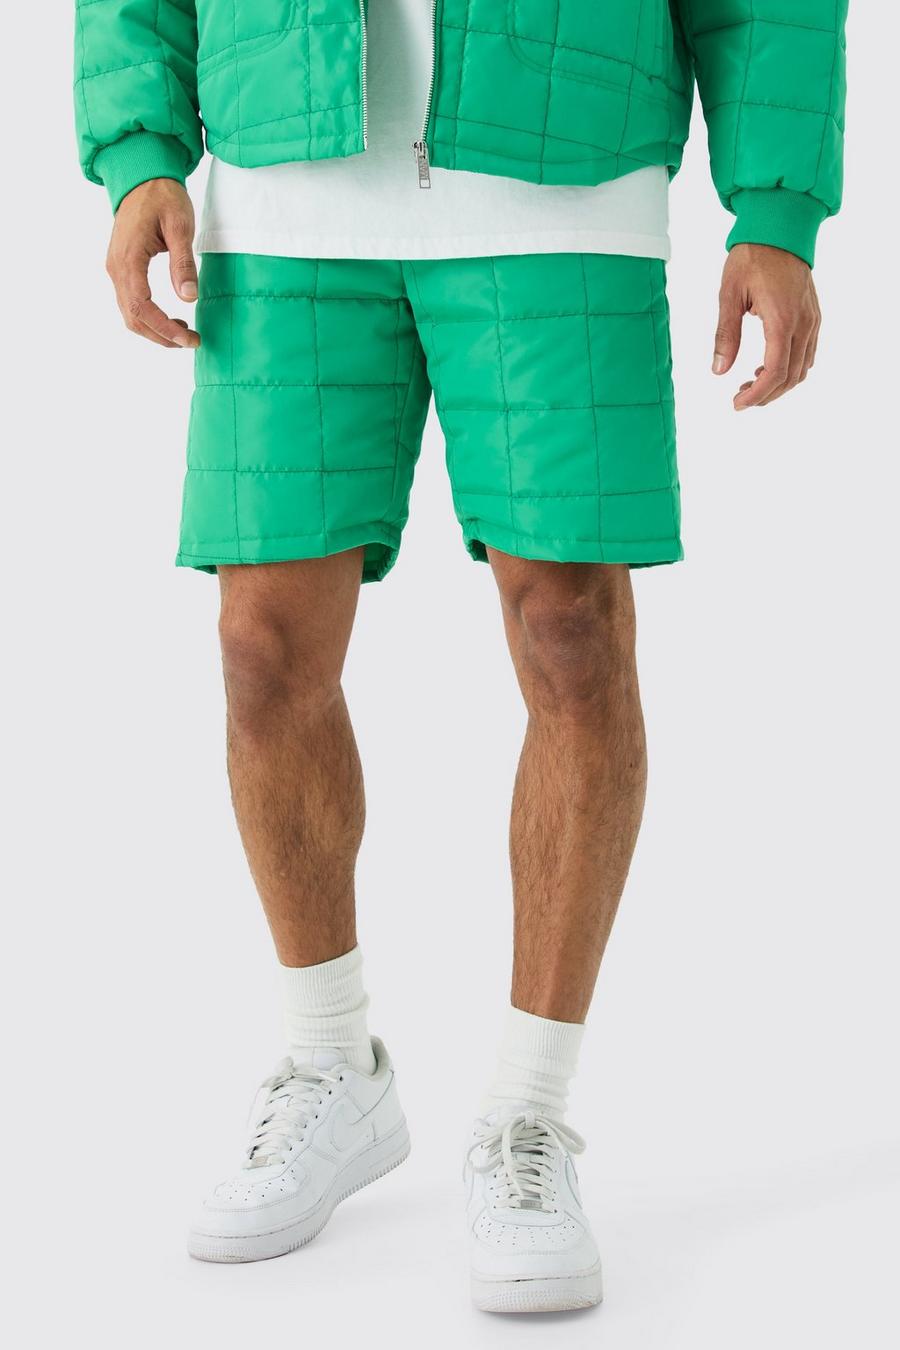 Green Vierkante Gewatteerde Shorts Met Stiksels En Lus